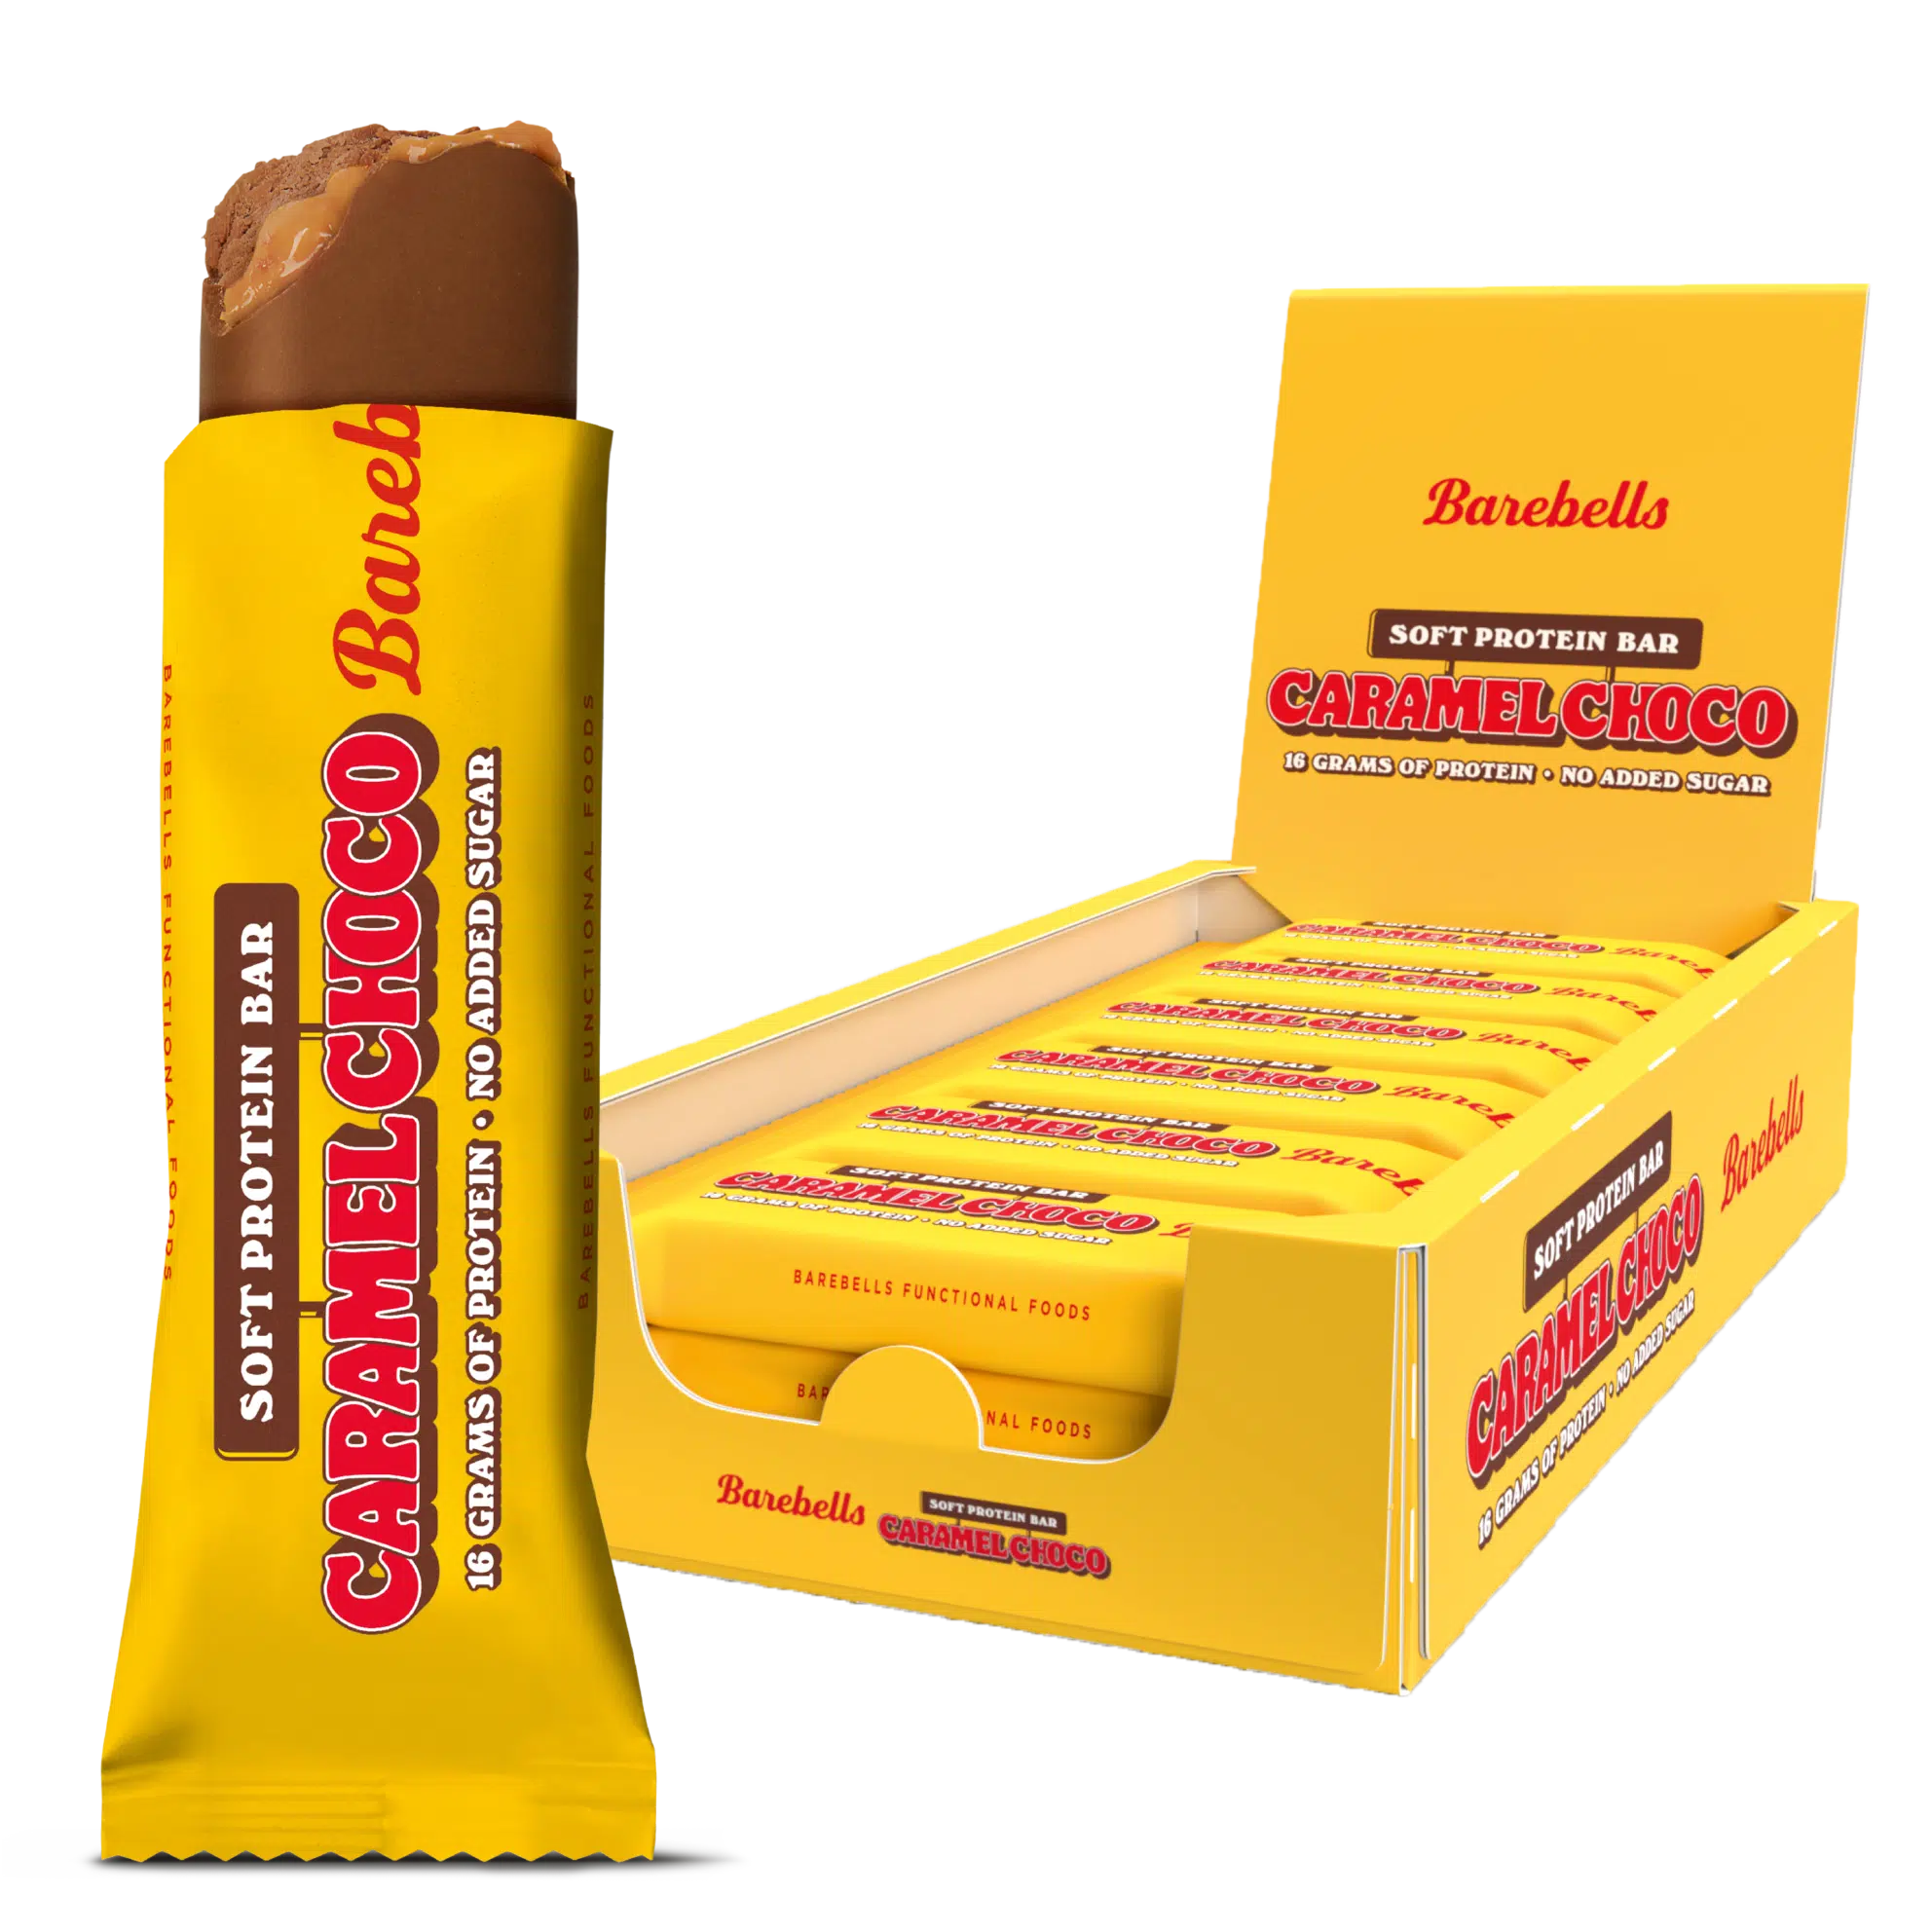 Barebells Soft Protein Bar 55g - Caramel Choco